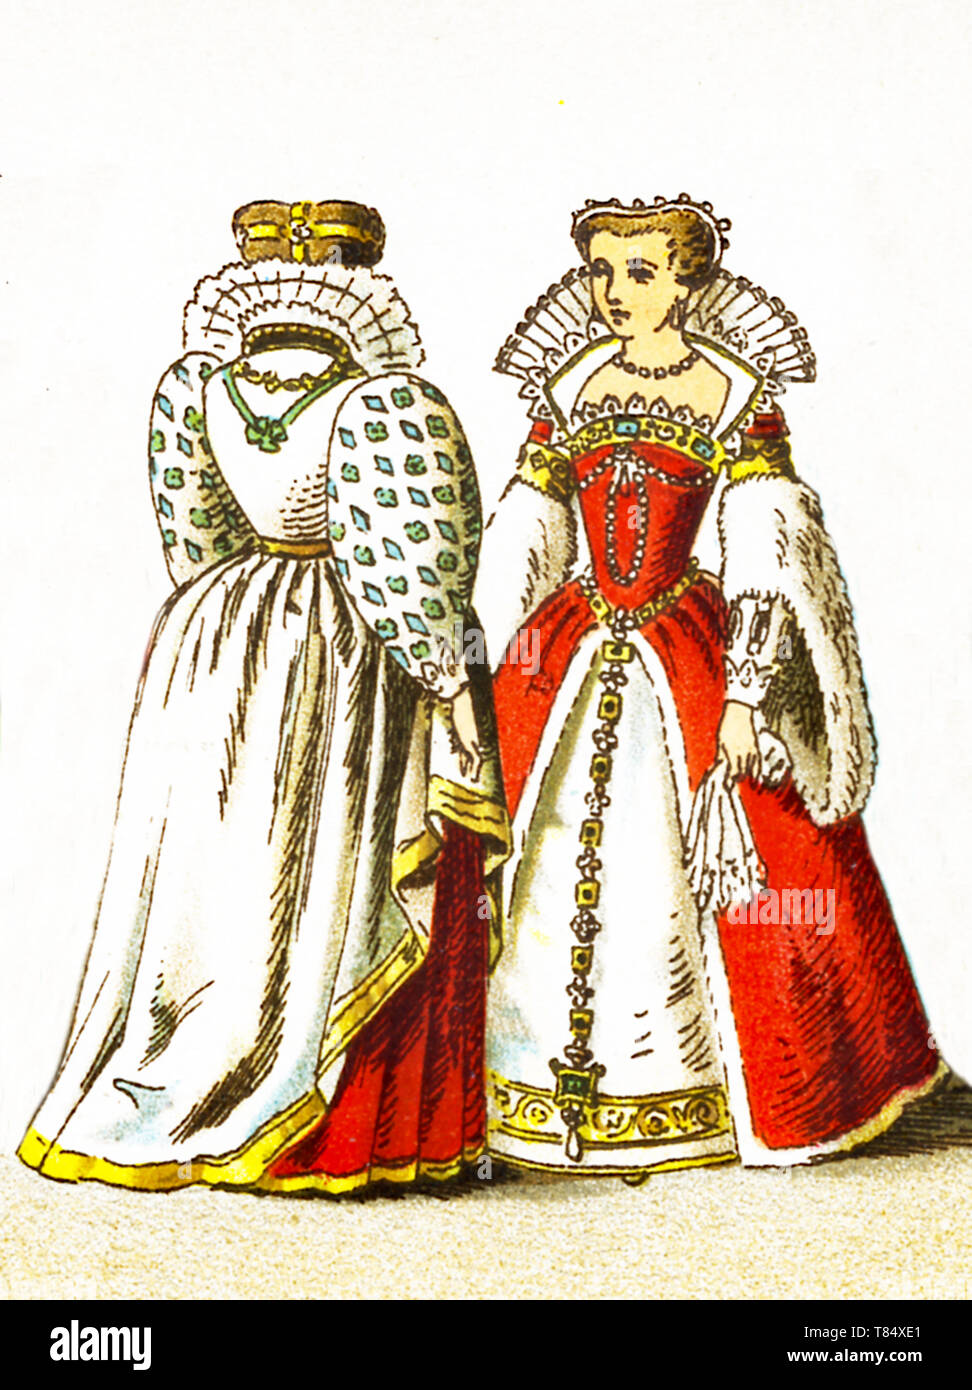 Le figure qui rappresentate sono il popolo francese tra il 1550 e il 1600. Essi sono, da sinistra a destra: una corte i costumi indossati da una nobile signora al momento e Louisa di Lorena la consorte di Enrico III. L'illustrazione risale al 1882. Foto Stock